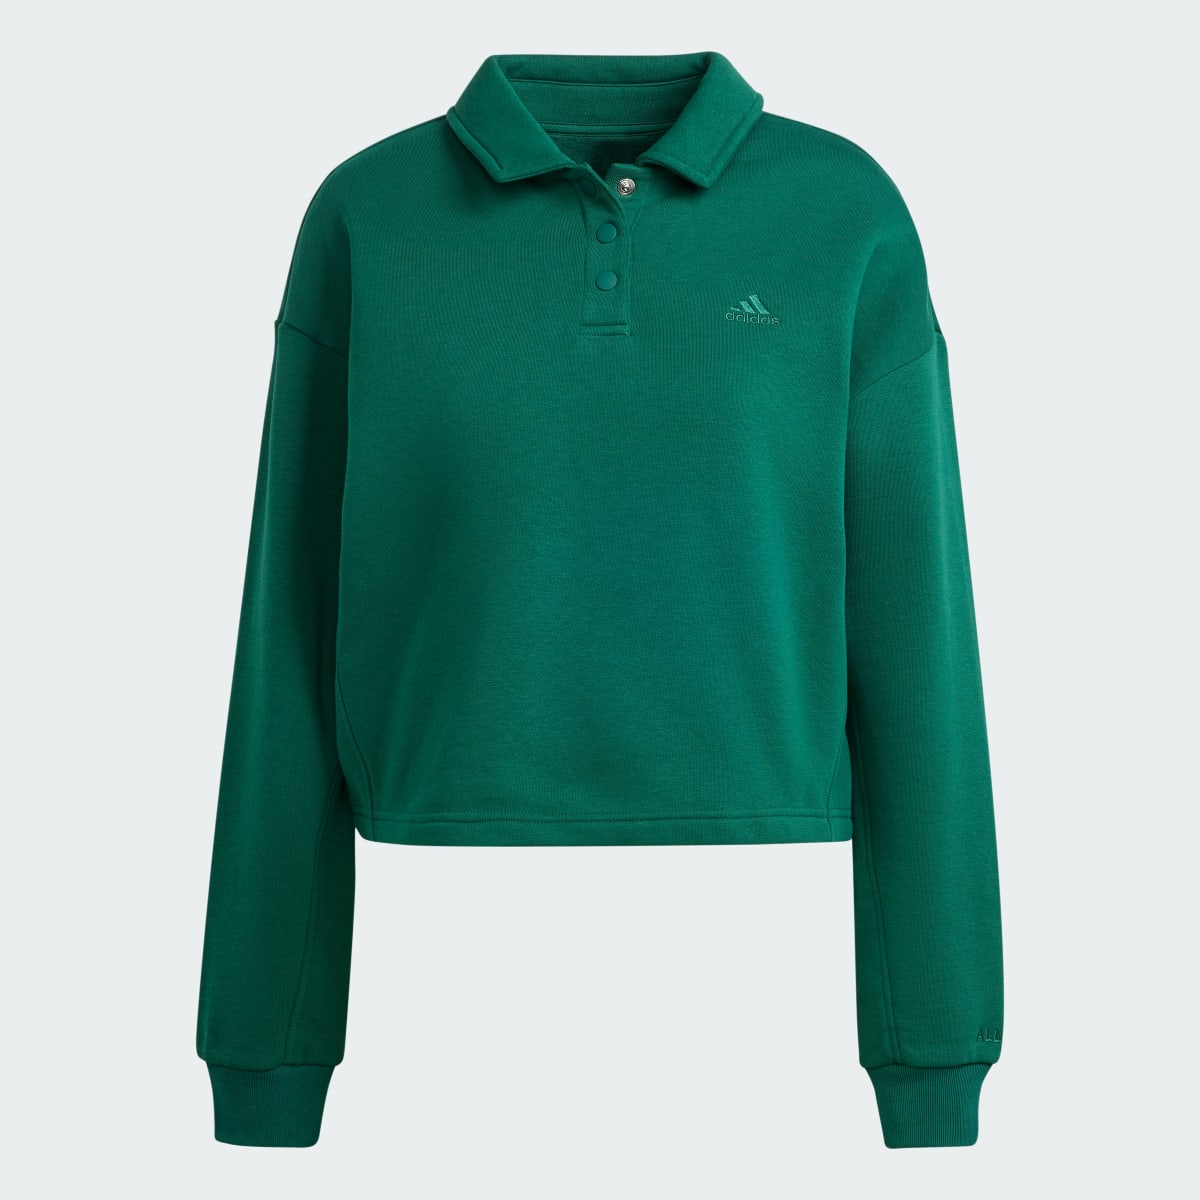 Adidas All SZN Fleece Graphic Polo Sweatshirt. 5